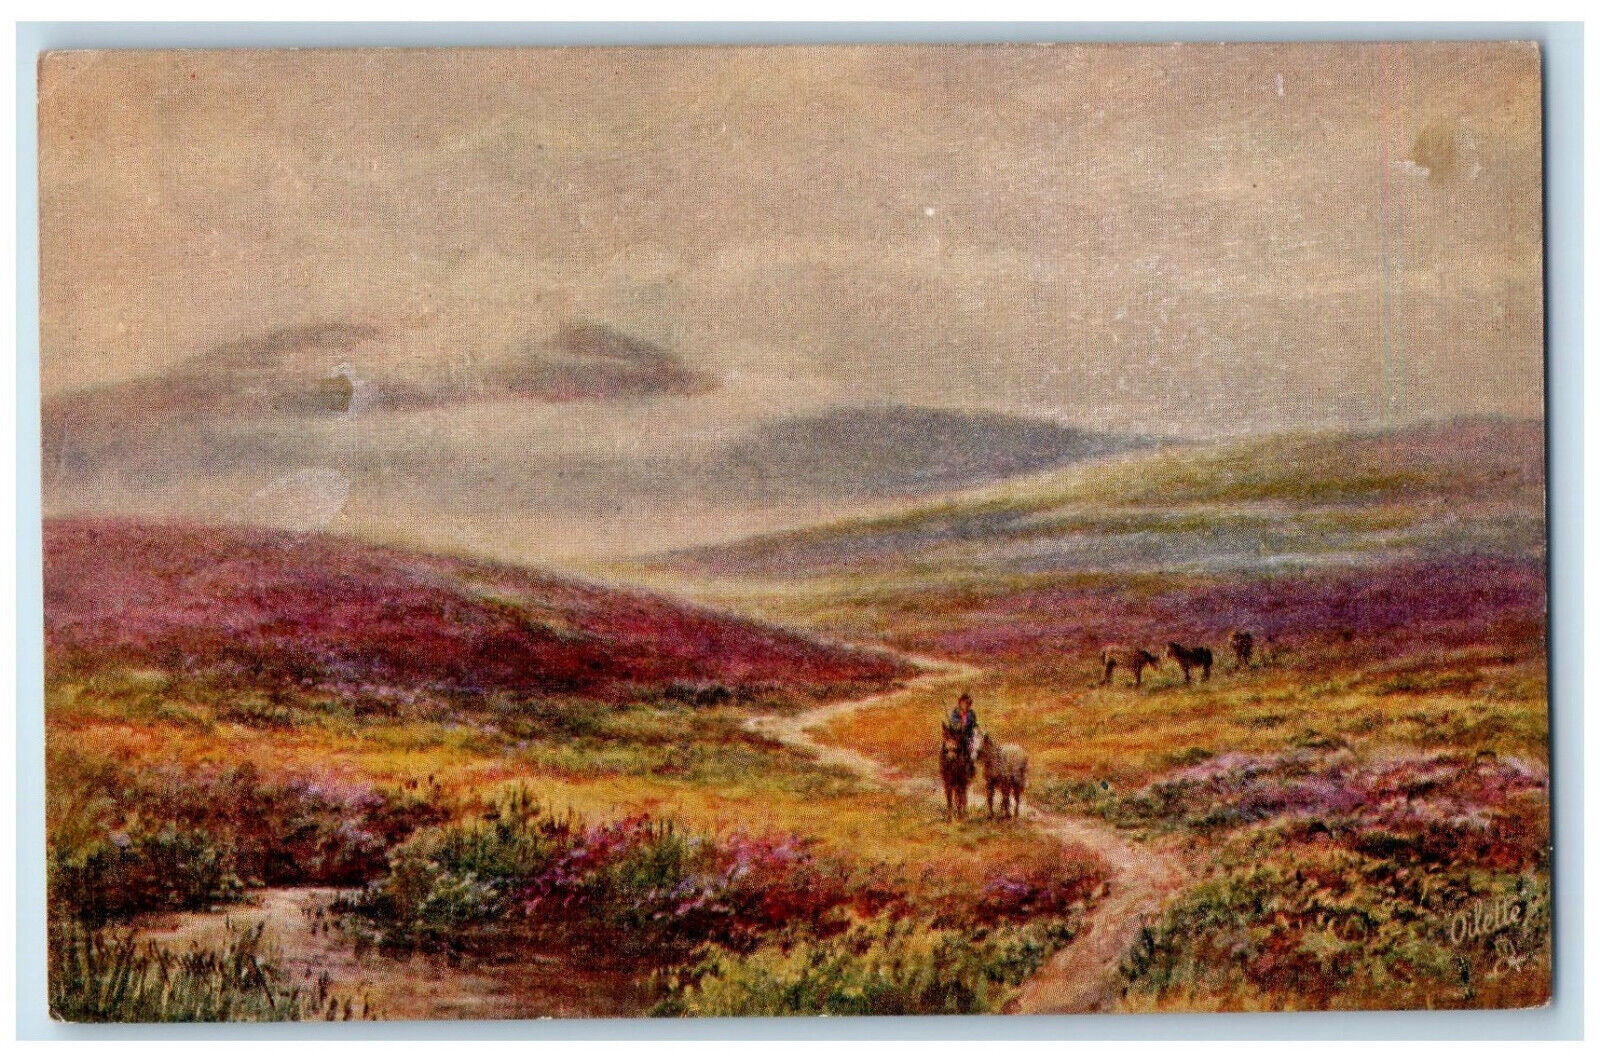 c1910 Horse Riding Picturesque Devon England Antique Oilette Art Tuck Postcard